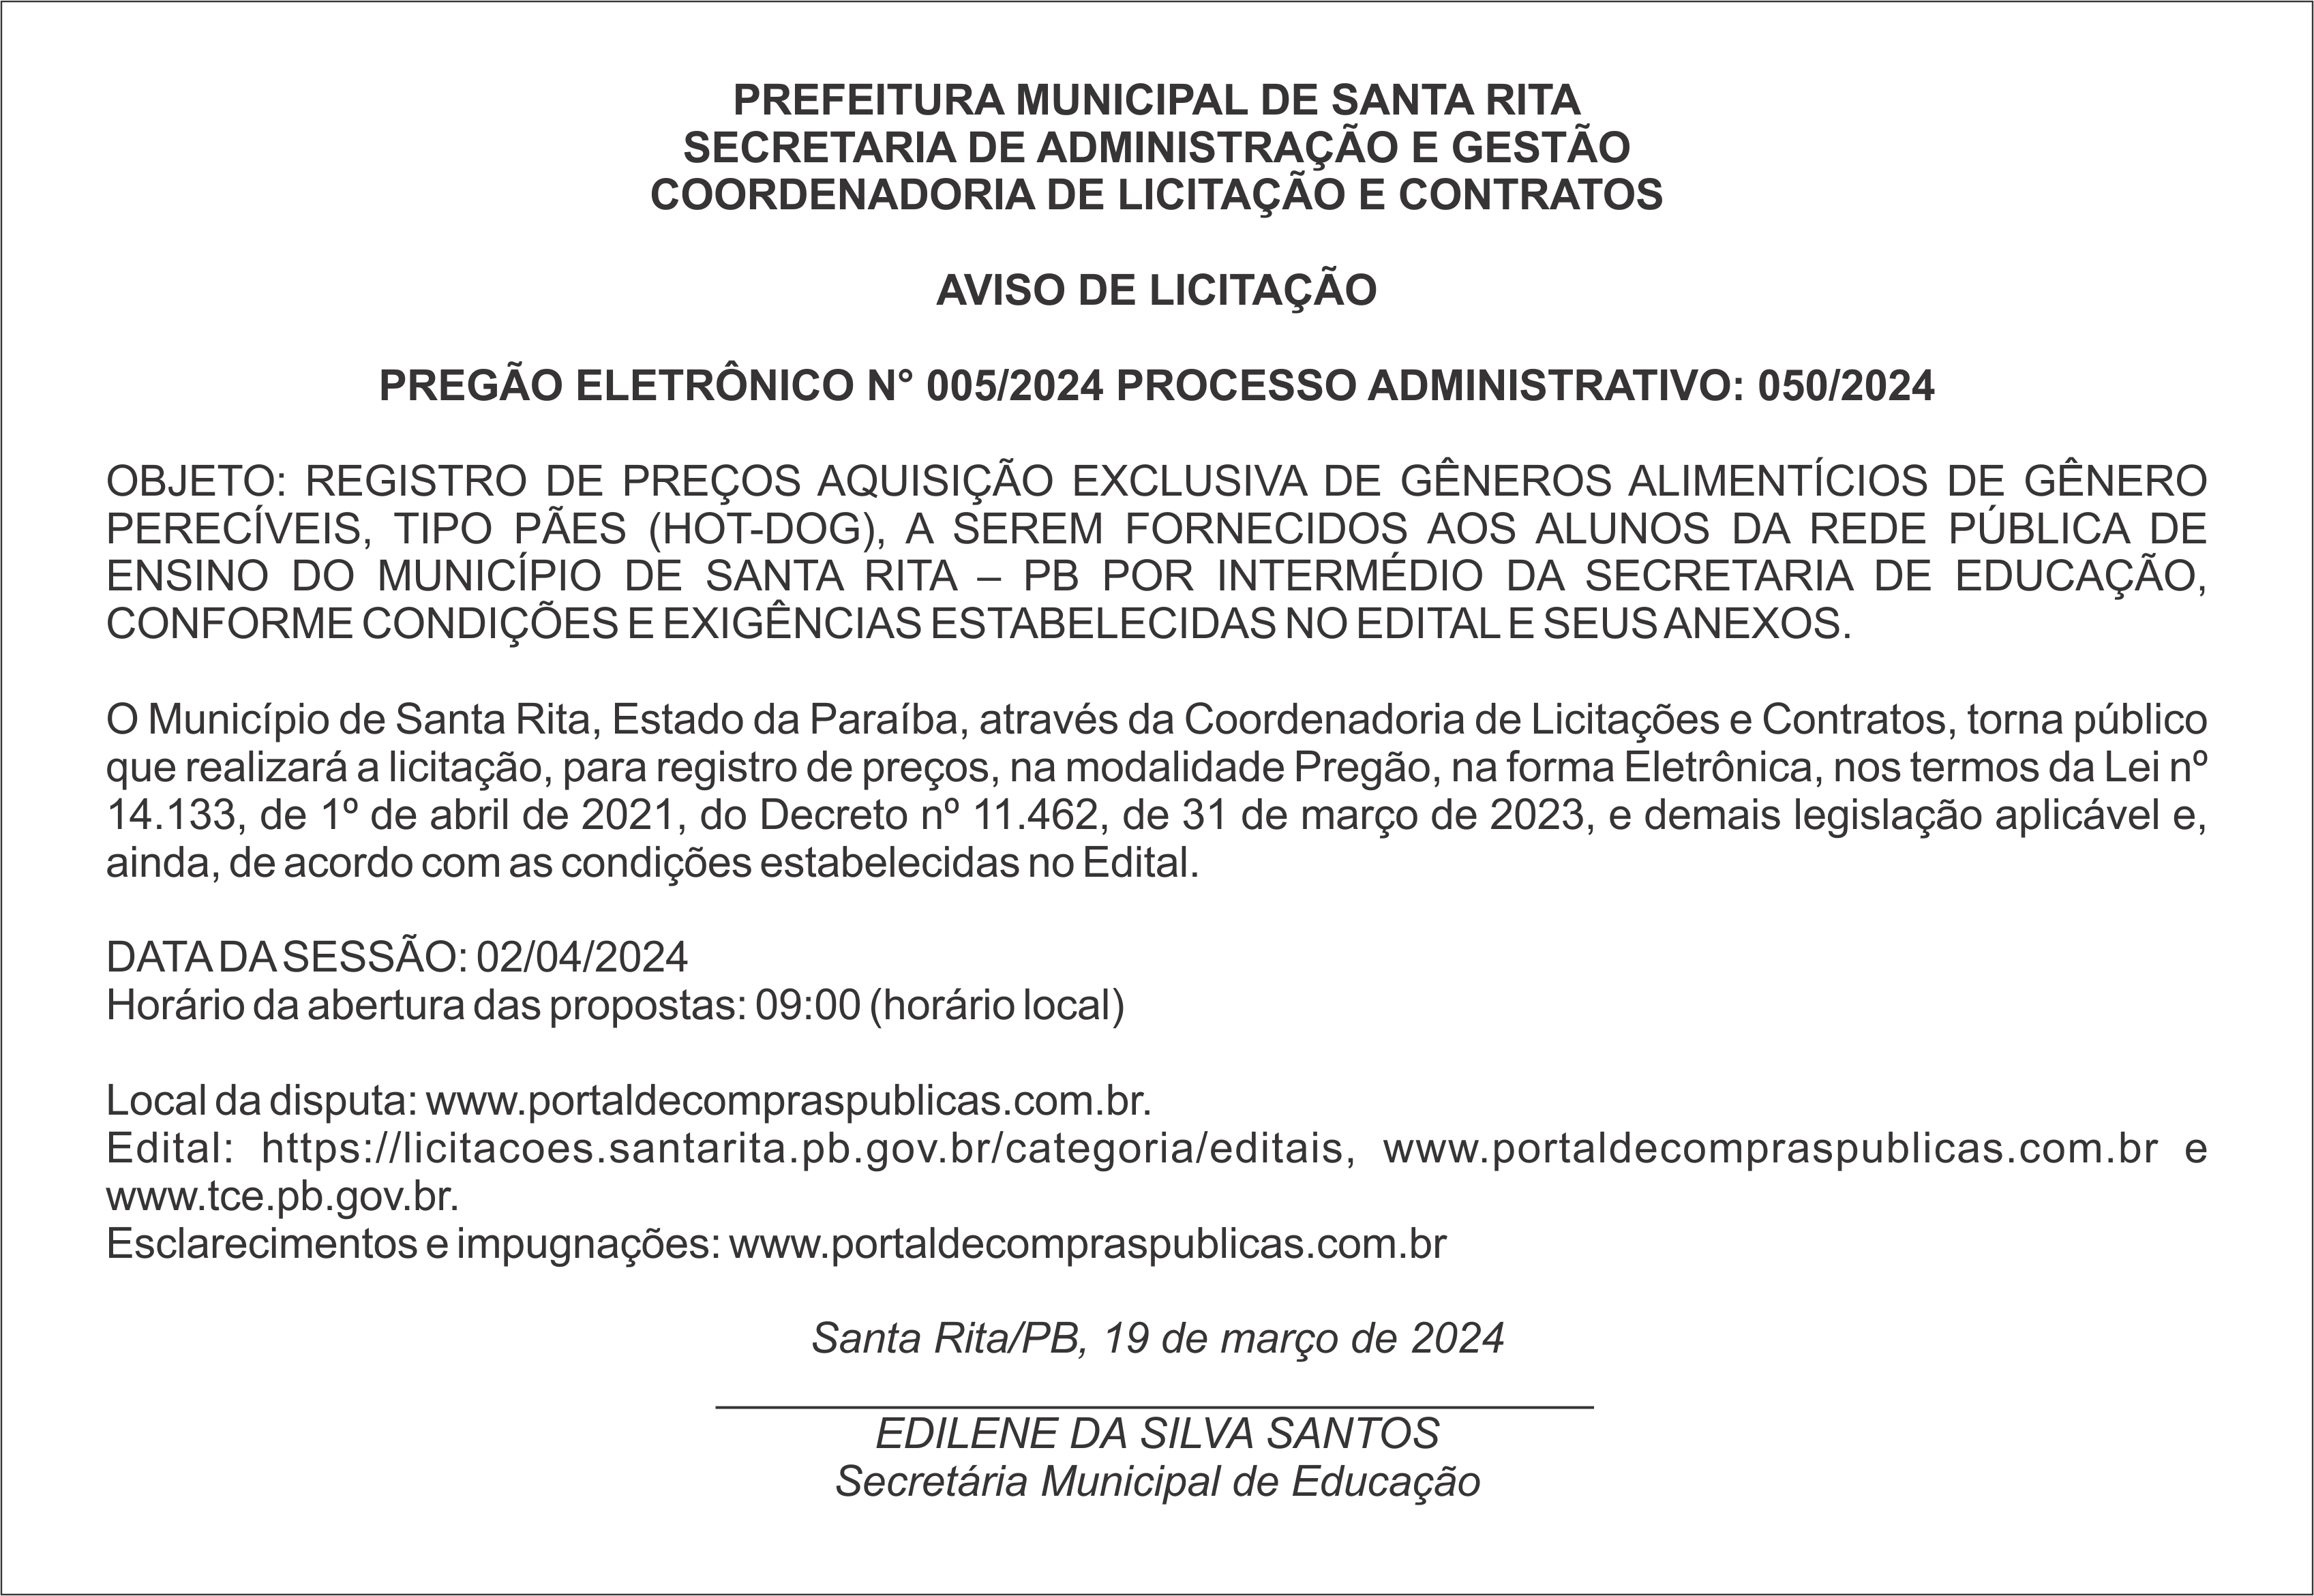 PREFEITURA MUNICIPAL DE SANTA RITA – AVISO DE LICITAÇÃO – PREGÃO ELETRÔNICO N° 005/2024